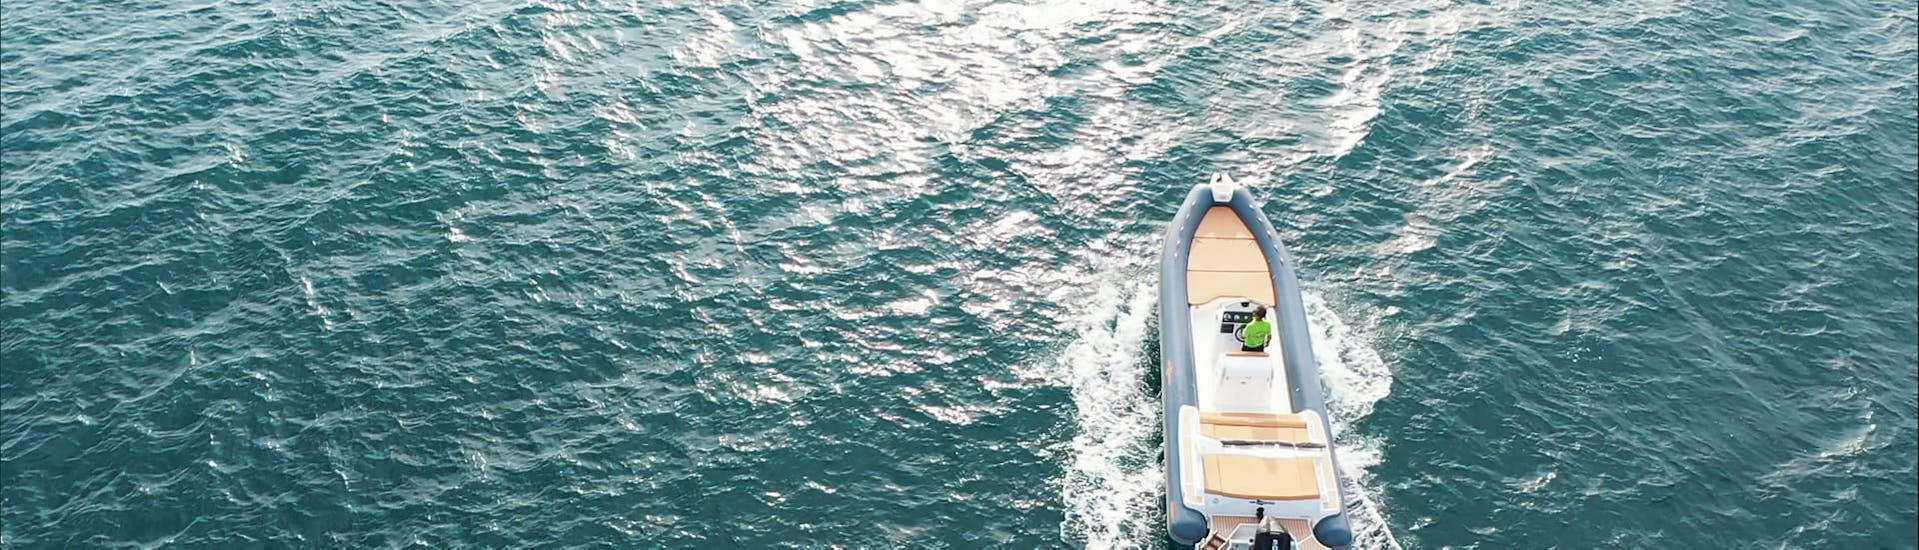 Bild eines RIB-Bootes aus dem RIB-Bootsverleih von Sea Star Marsala für bis zu 10 Personen mit Lizenz.